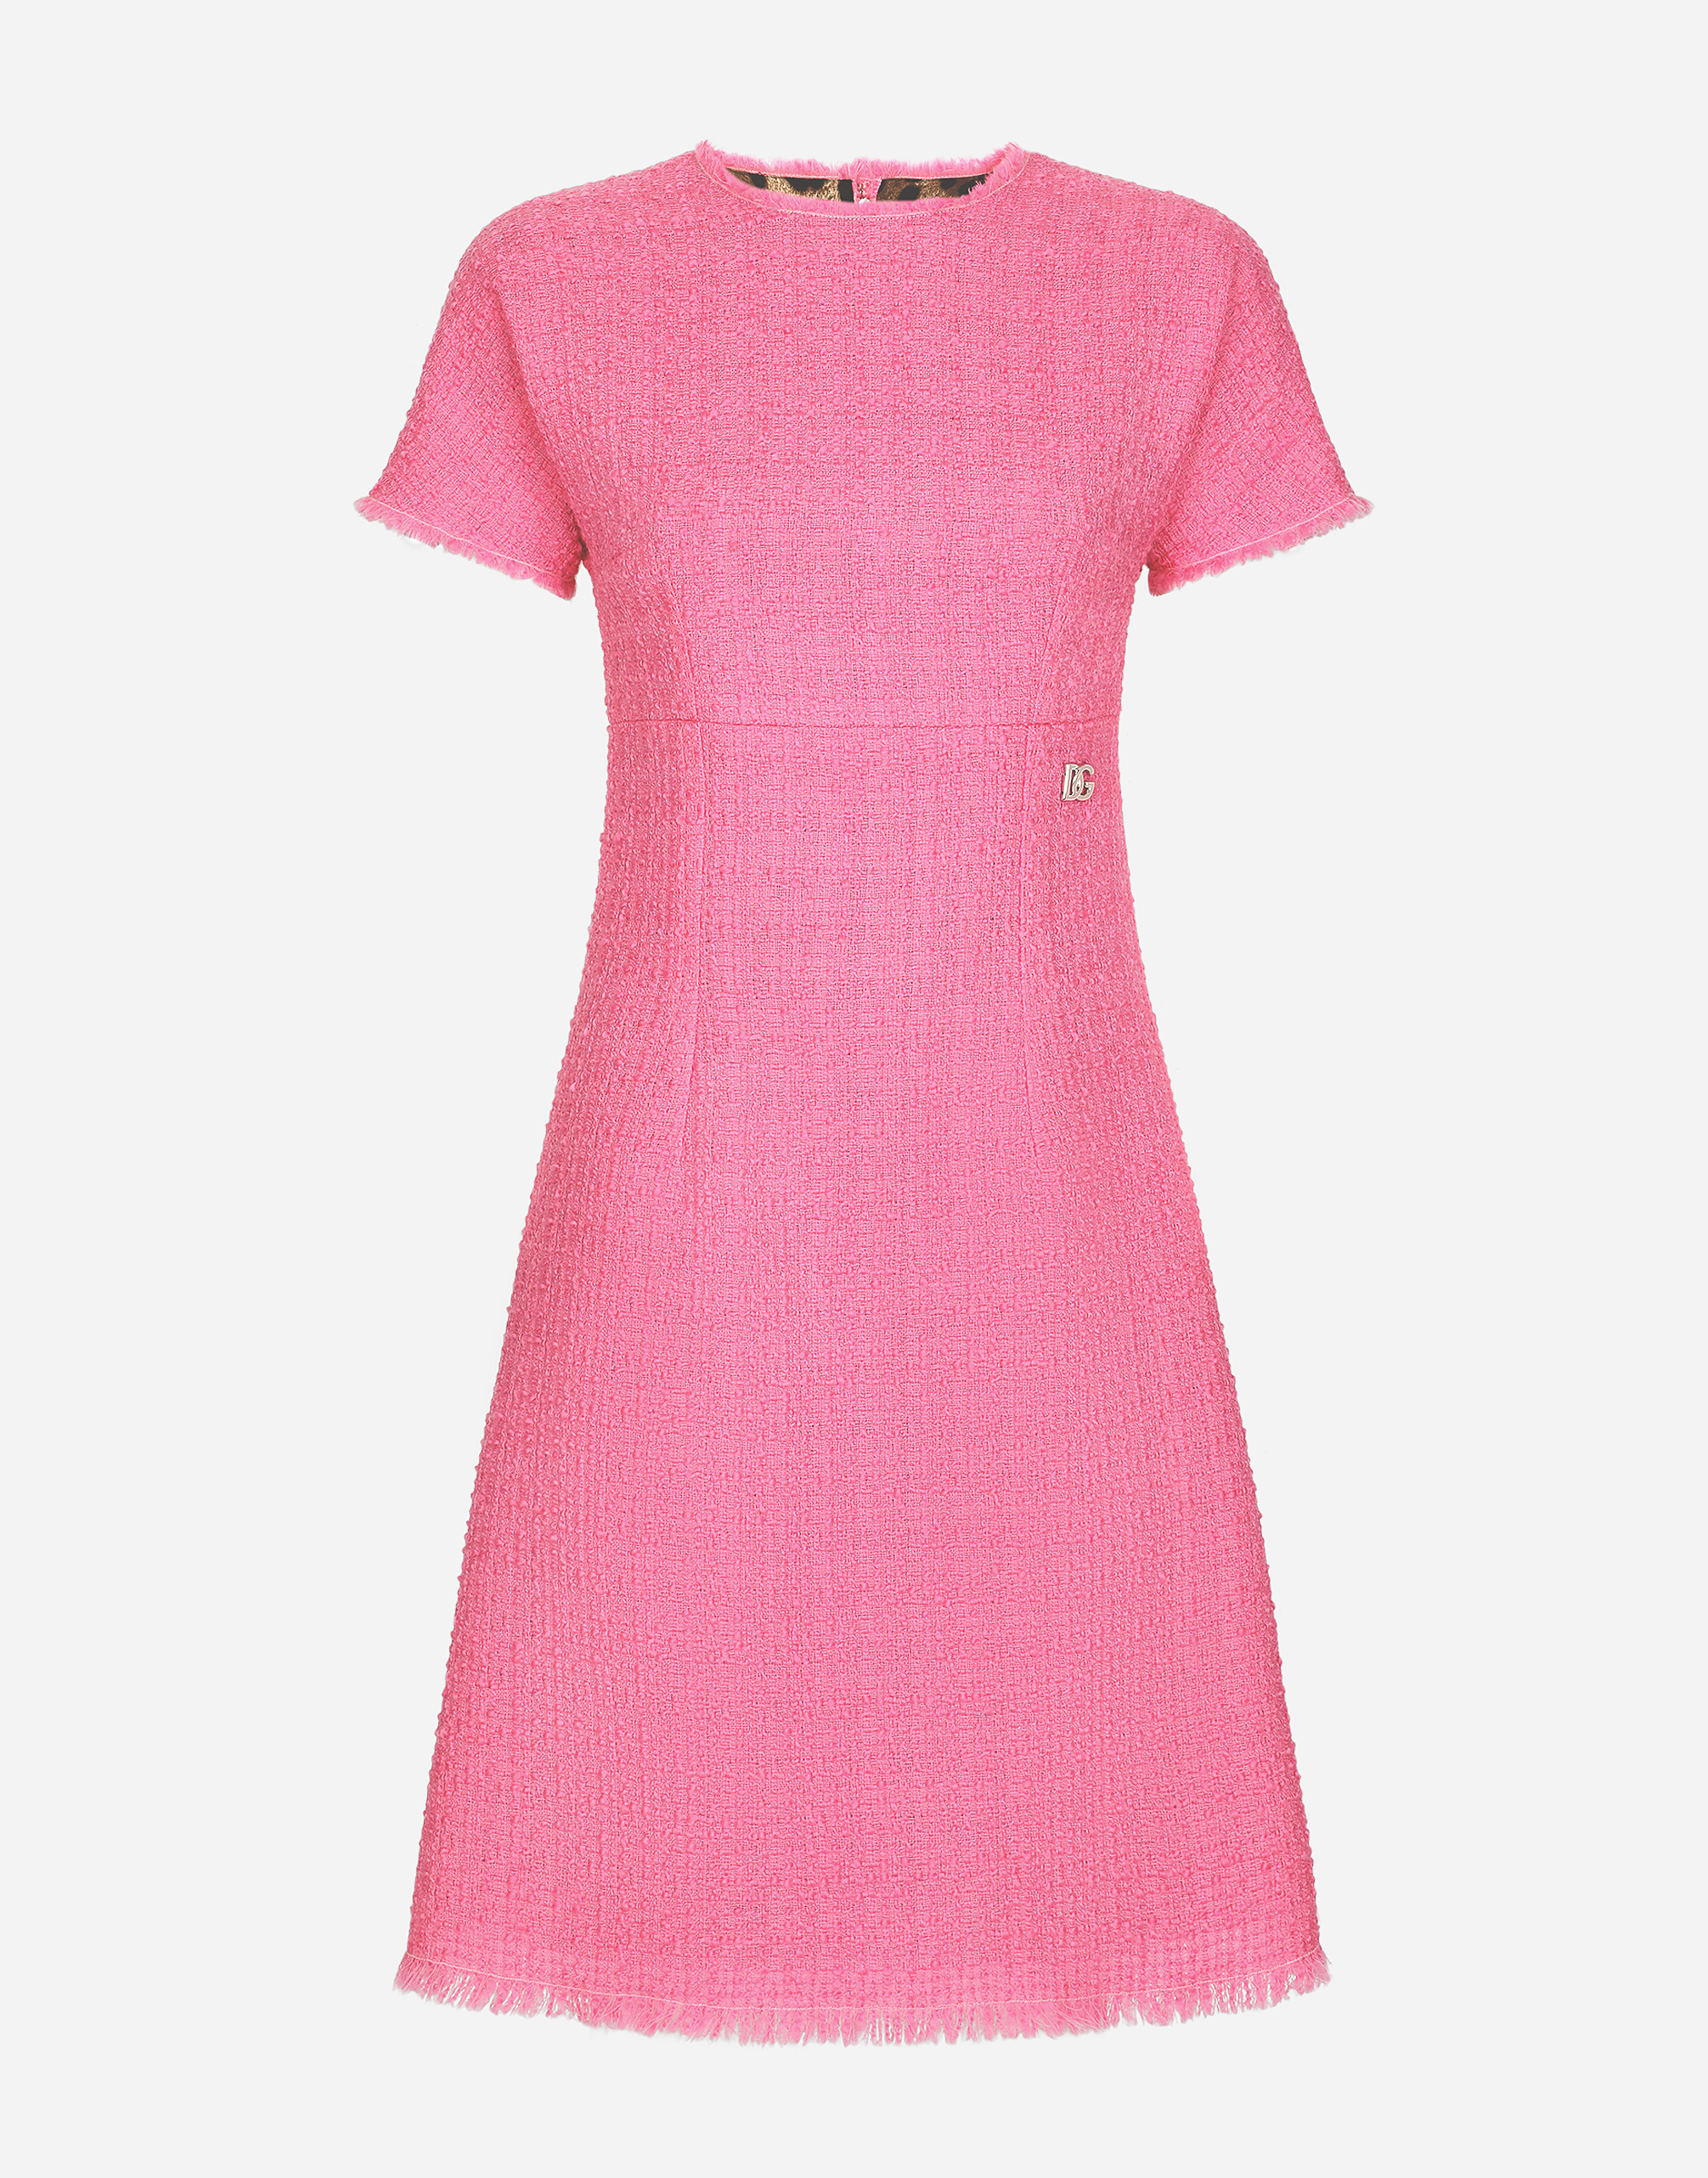 Raschel tweed calf-length dress with DG logo in Pink